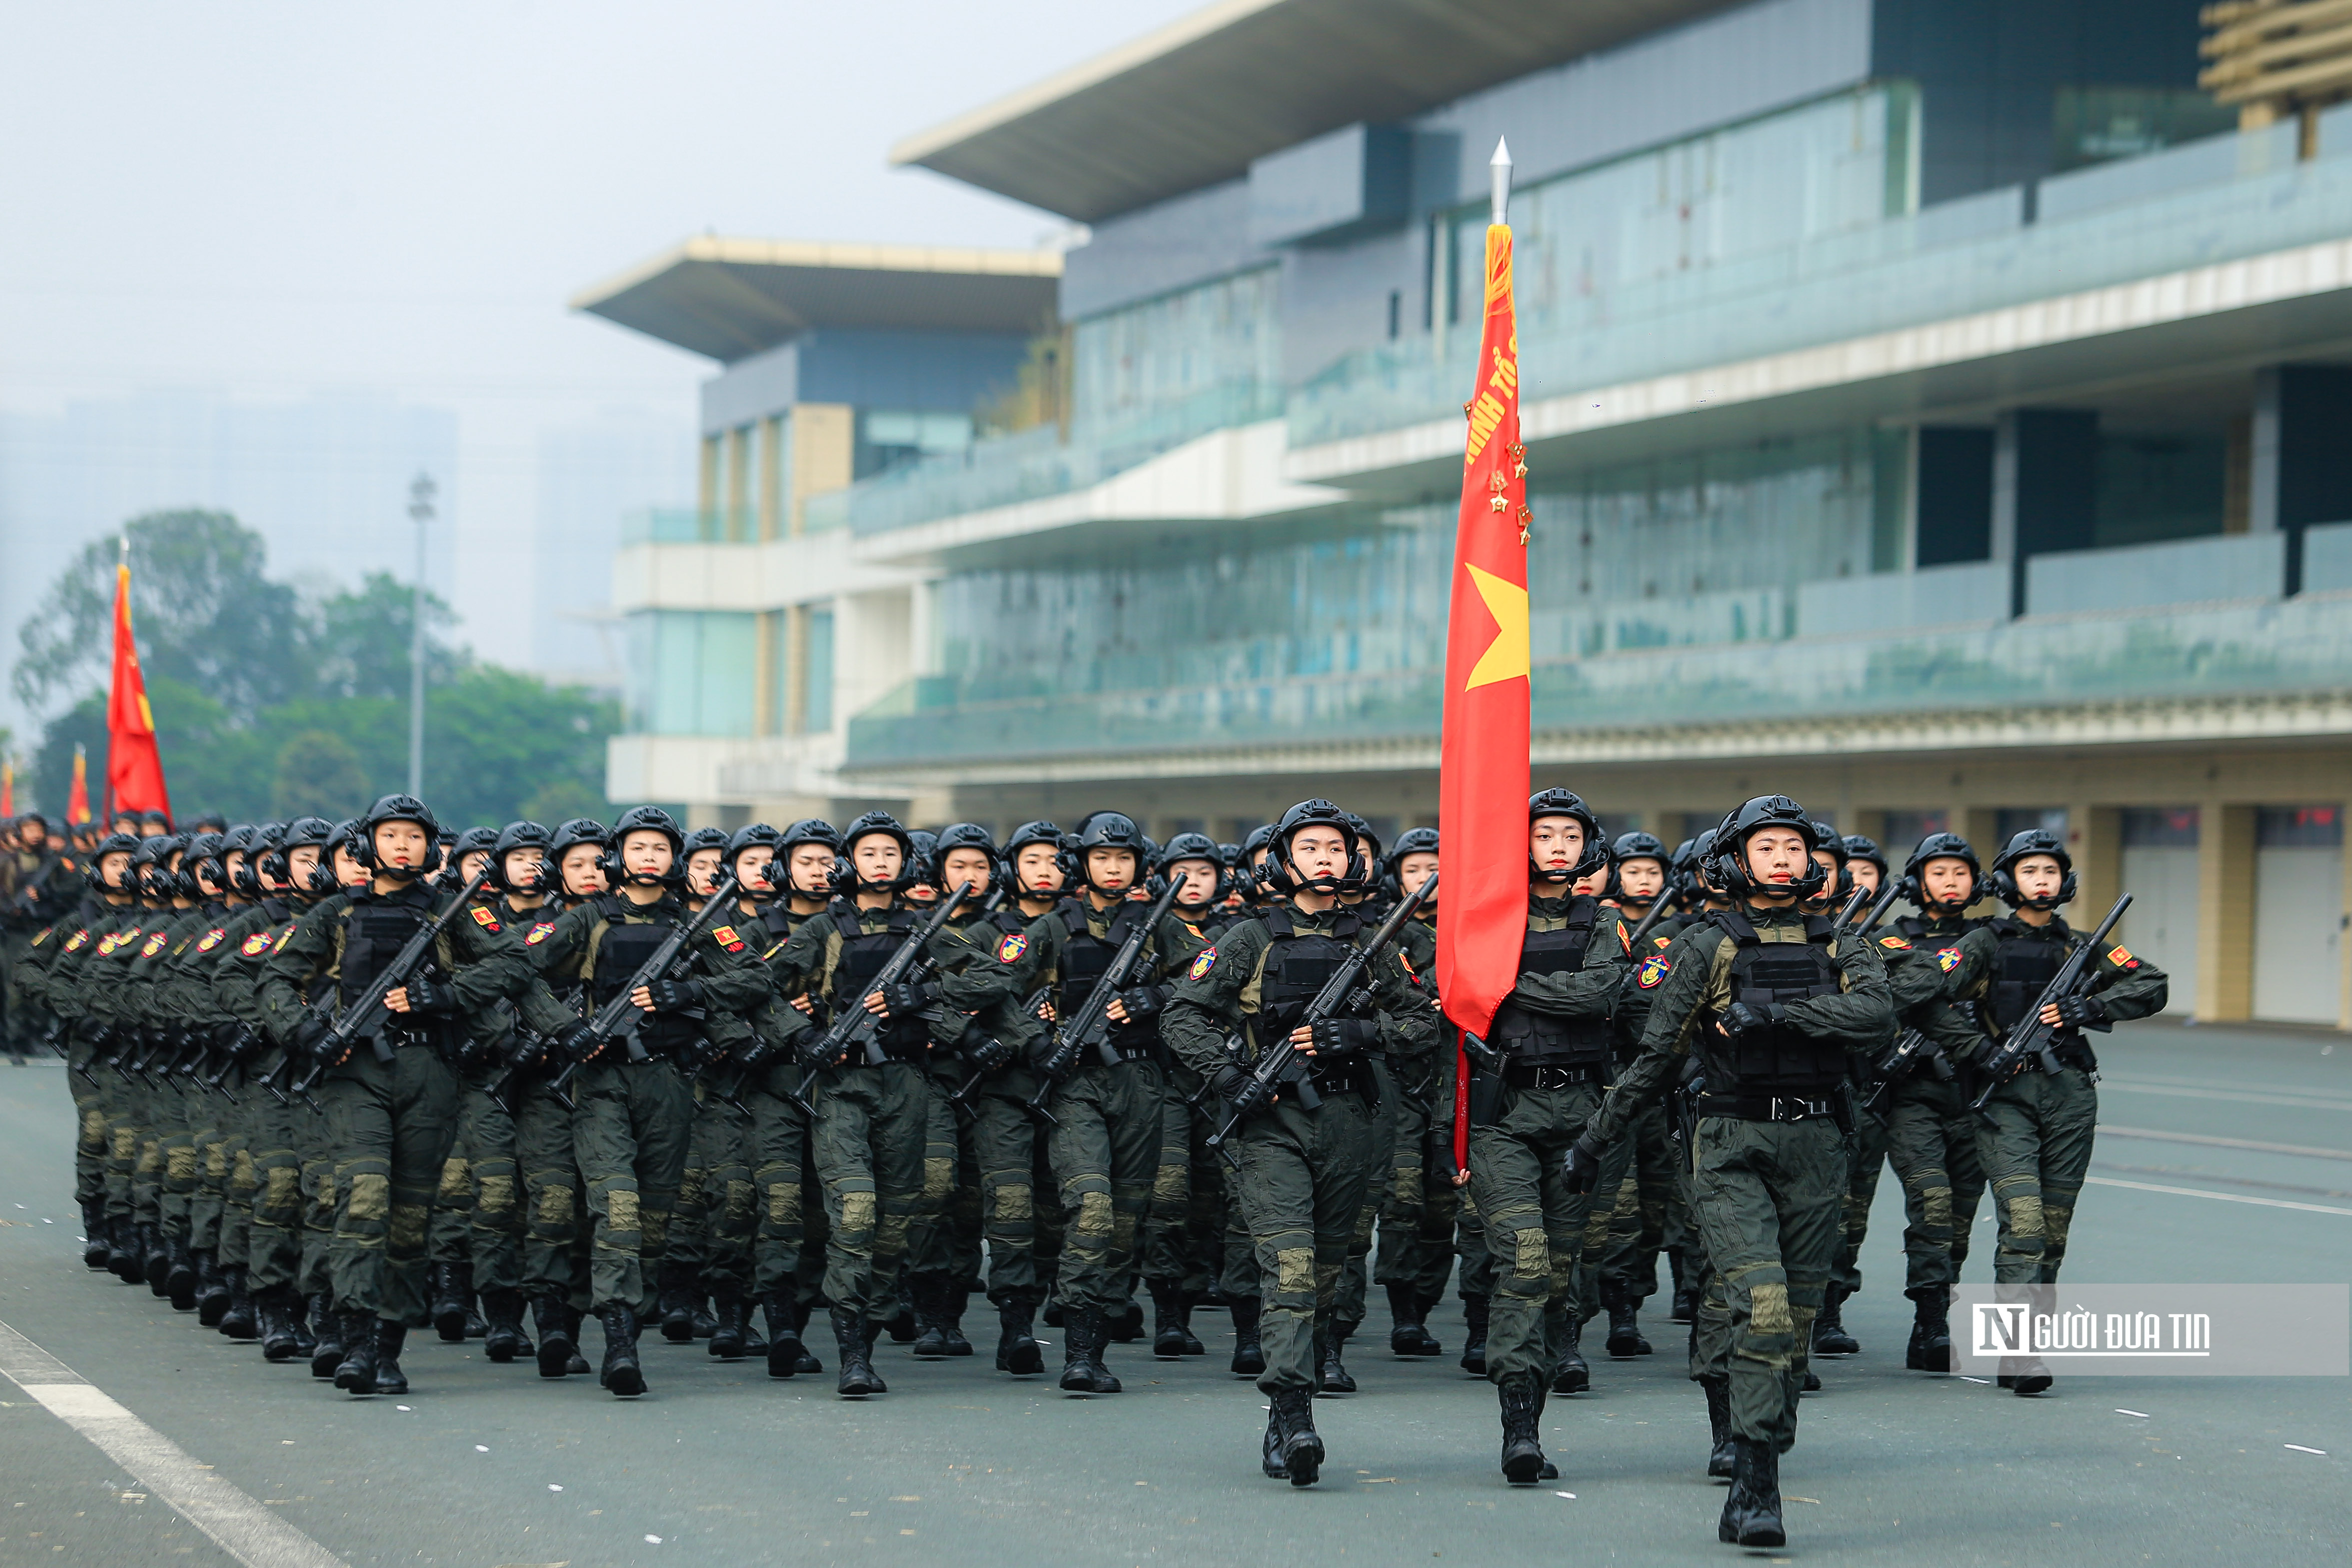 Sự kiện - Mãn nhãn xem màn diễu hành oai nghiêm của lực lượng Cảnh sát cơ động (Hình 12).